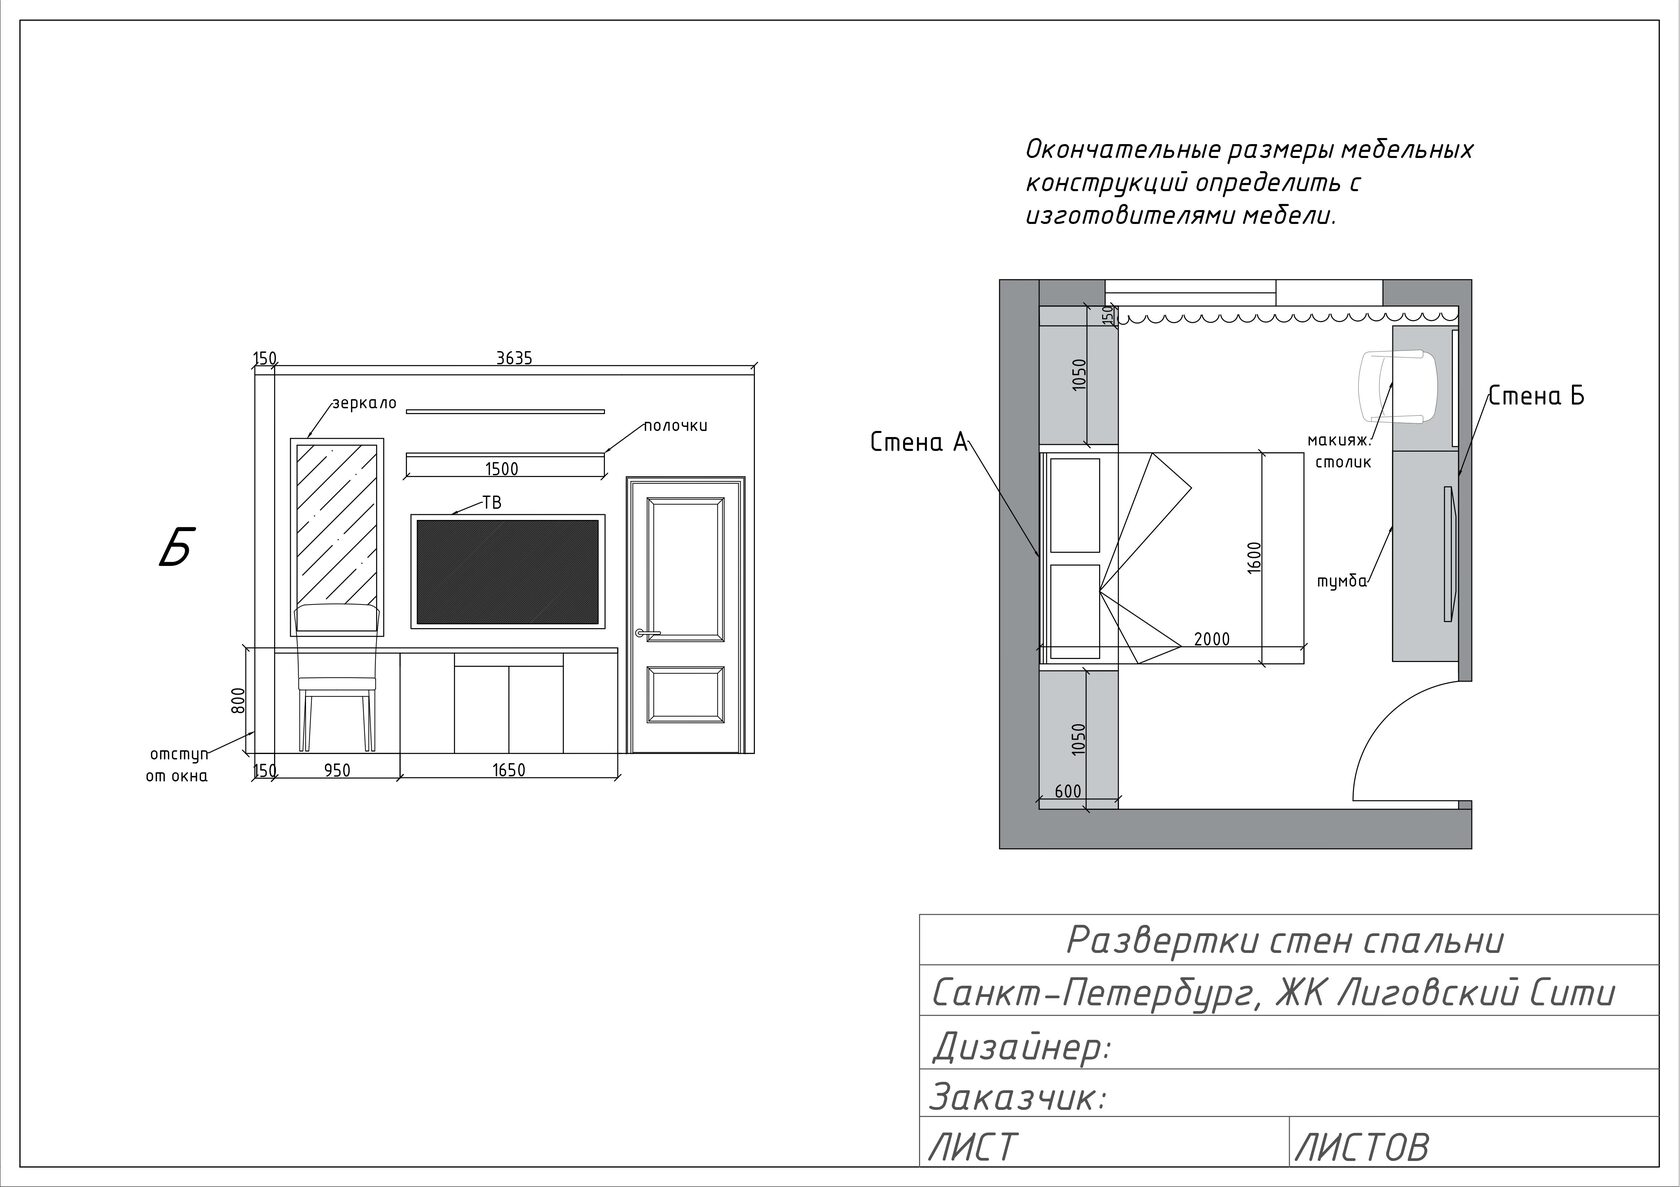 Создание проекта дизайна интерьера в программе AutoCAD